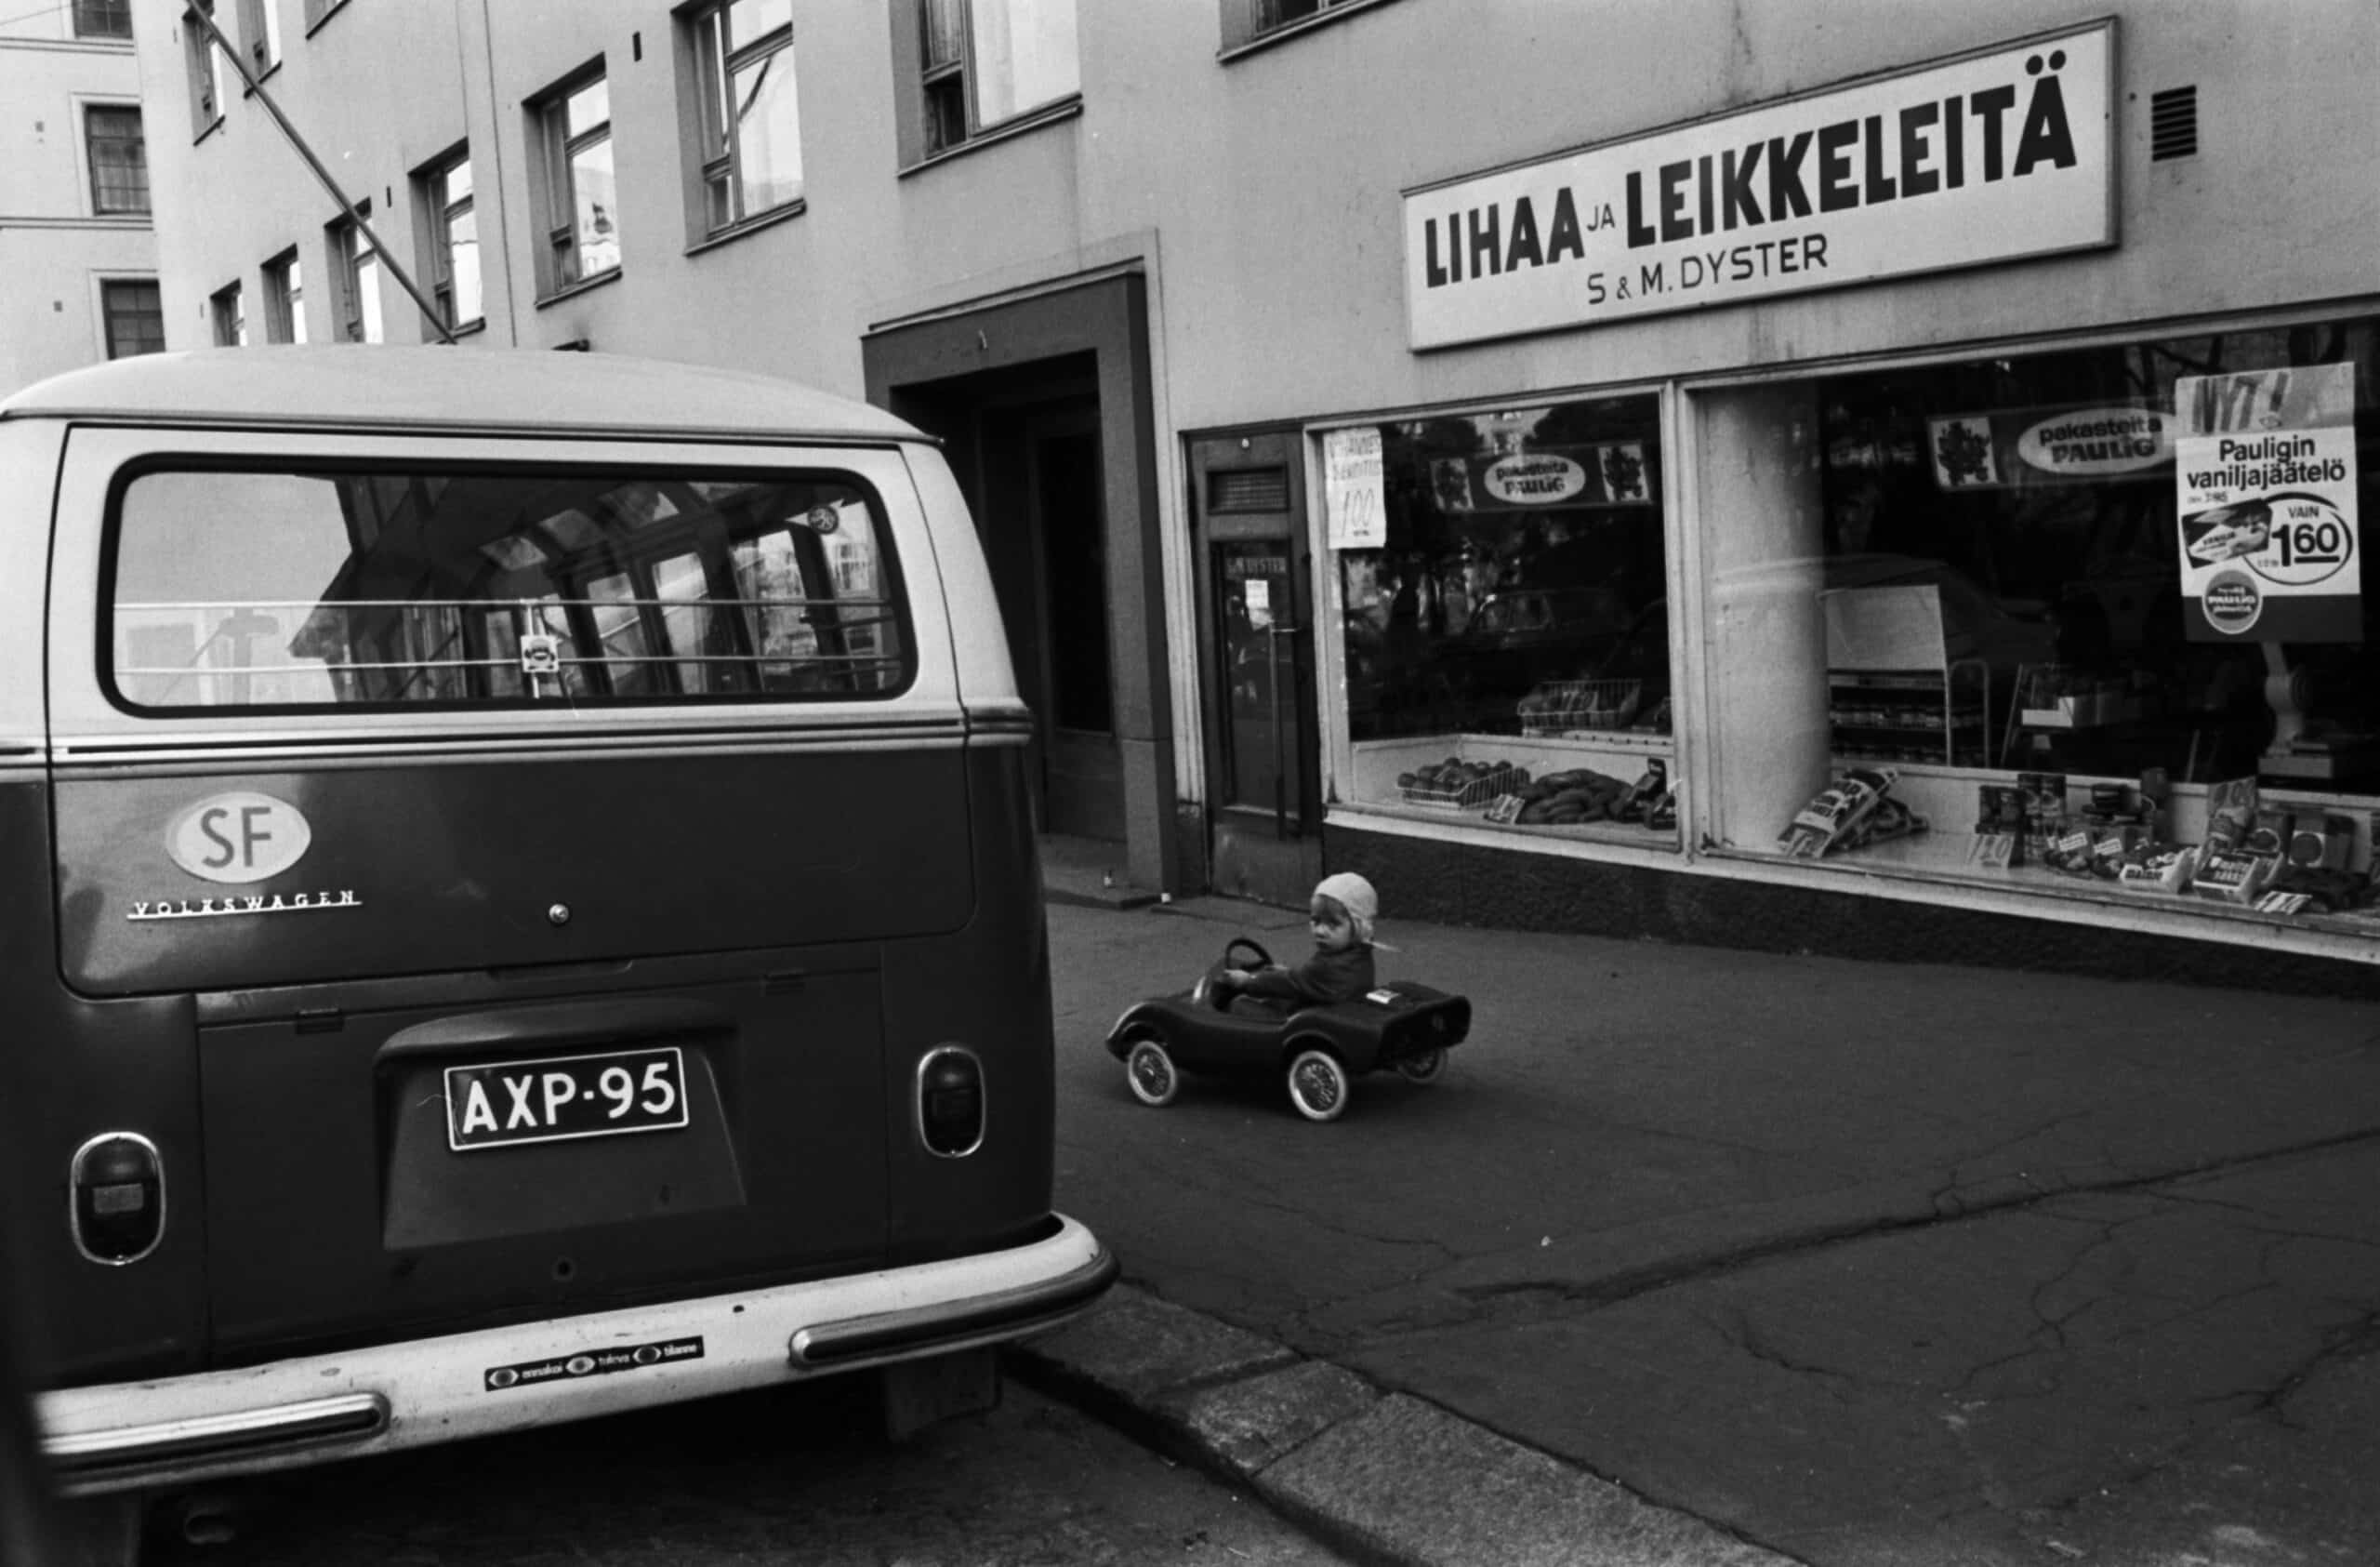 Kuva 2. Autoistuminen muutti lasten elinympäristöjä ja liikkumismahdollisuuksia. Kuva vuodelta 1970 Helsingistä Neljänneltä linjalta. Kuvalähde: valokuvaaja Simo Rista, Helsingin kaupunginmuseo.